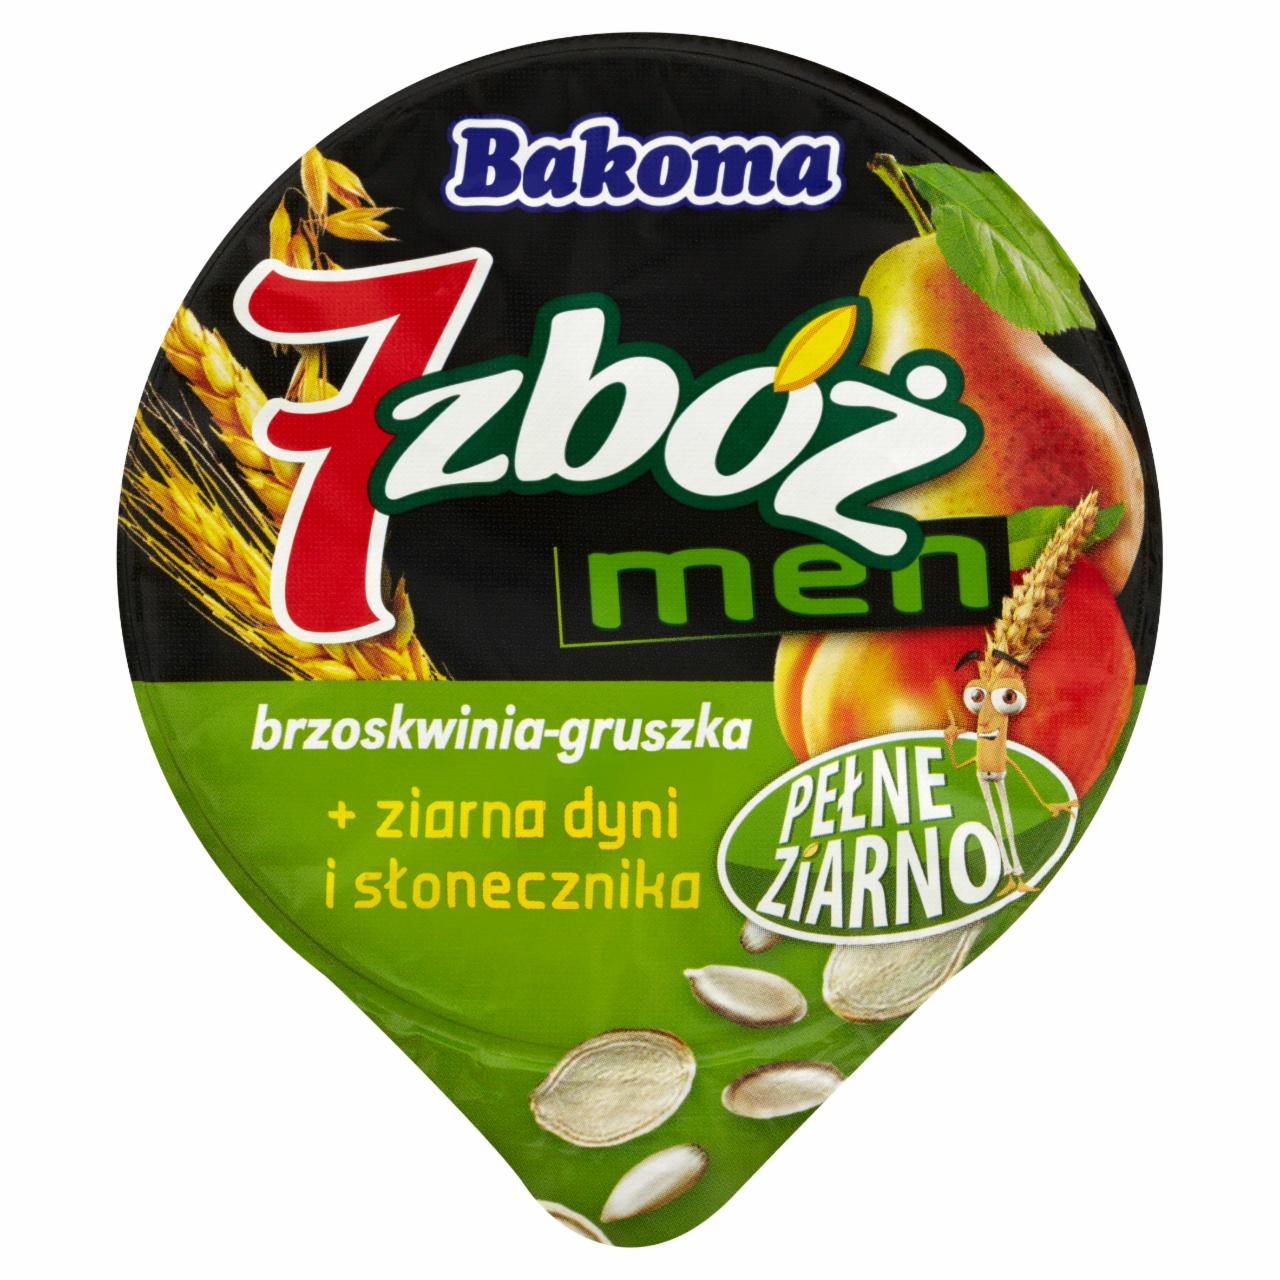 Zdjęcia - Bakoma 7 zbóż men brzoskwinia-gruszka Jogurt 170 g